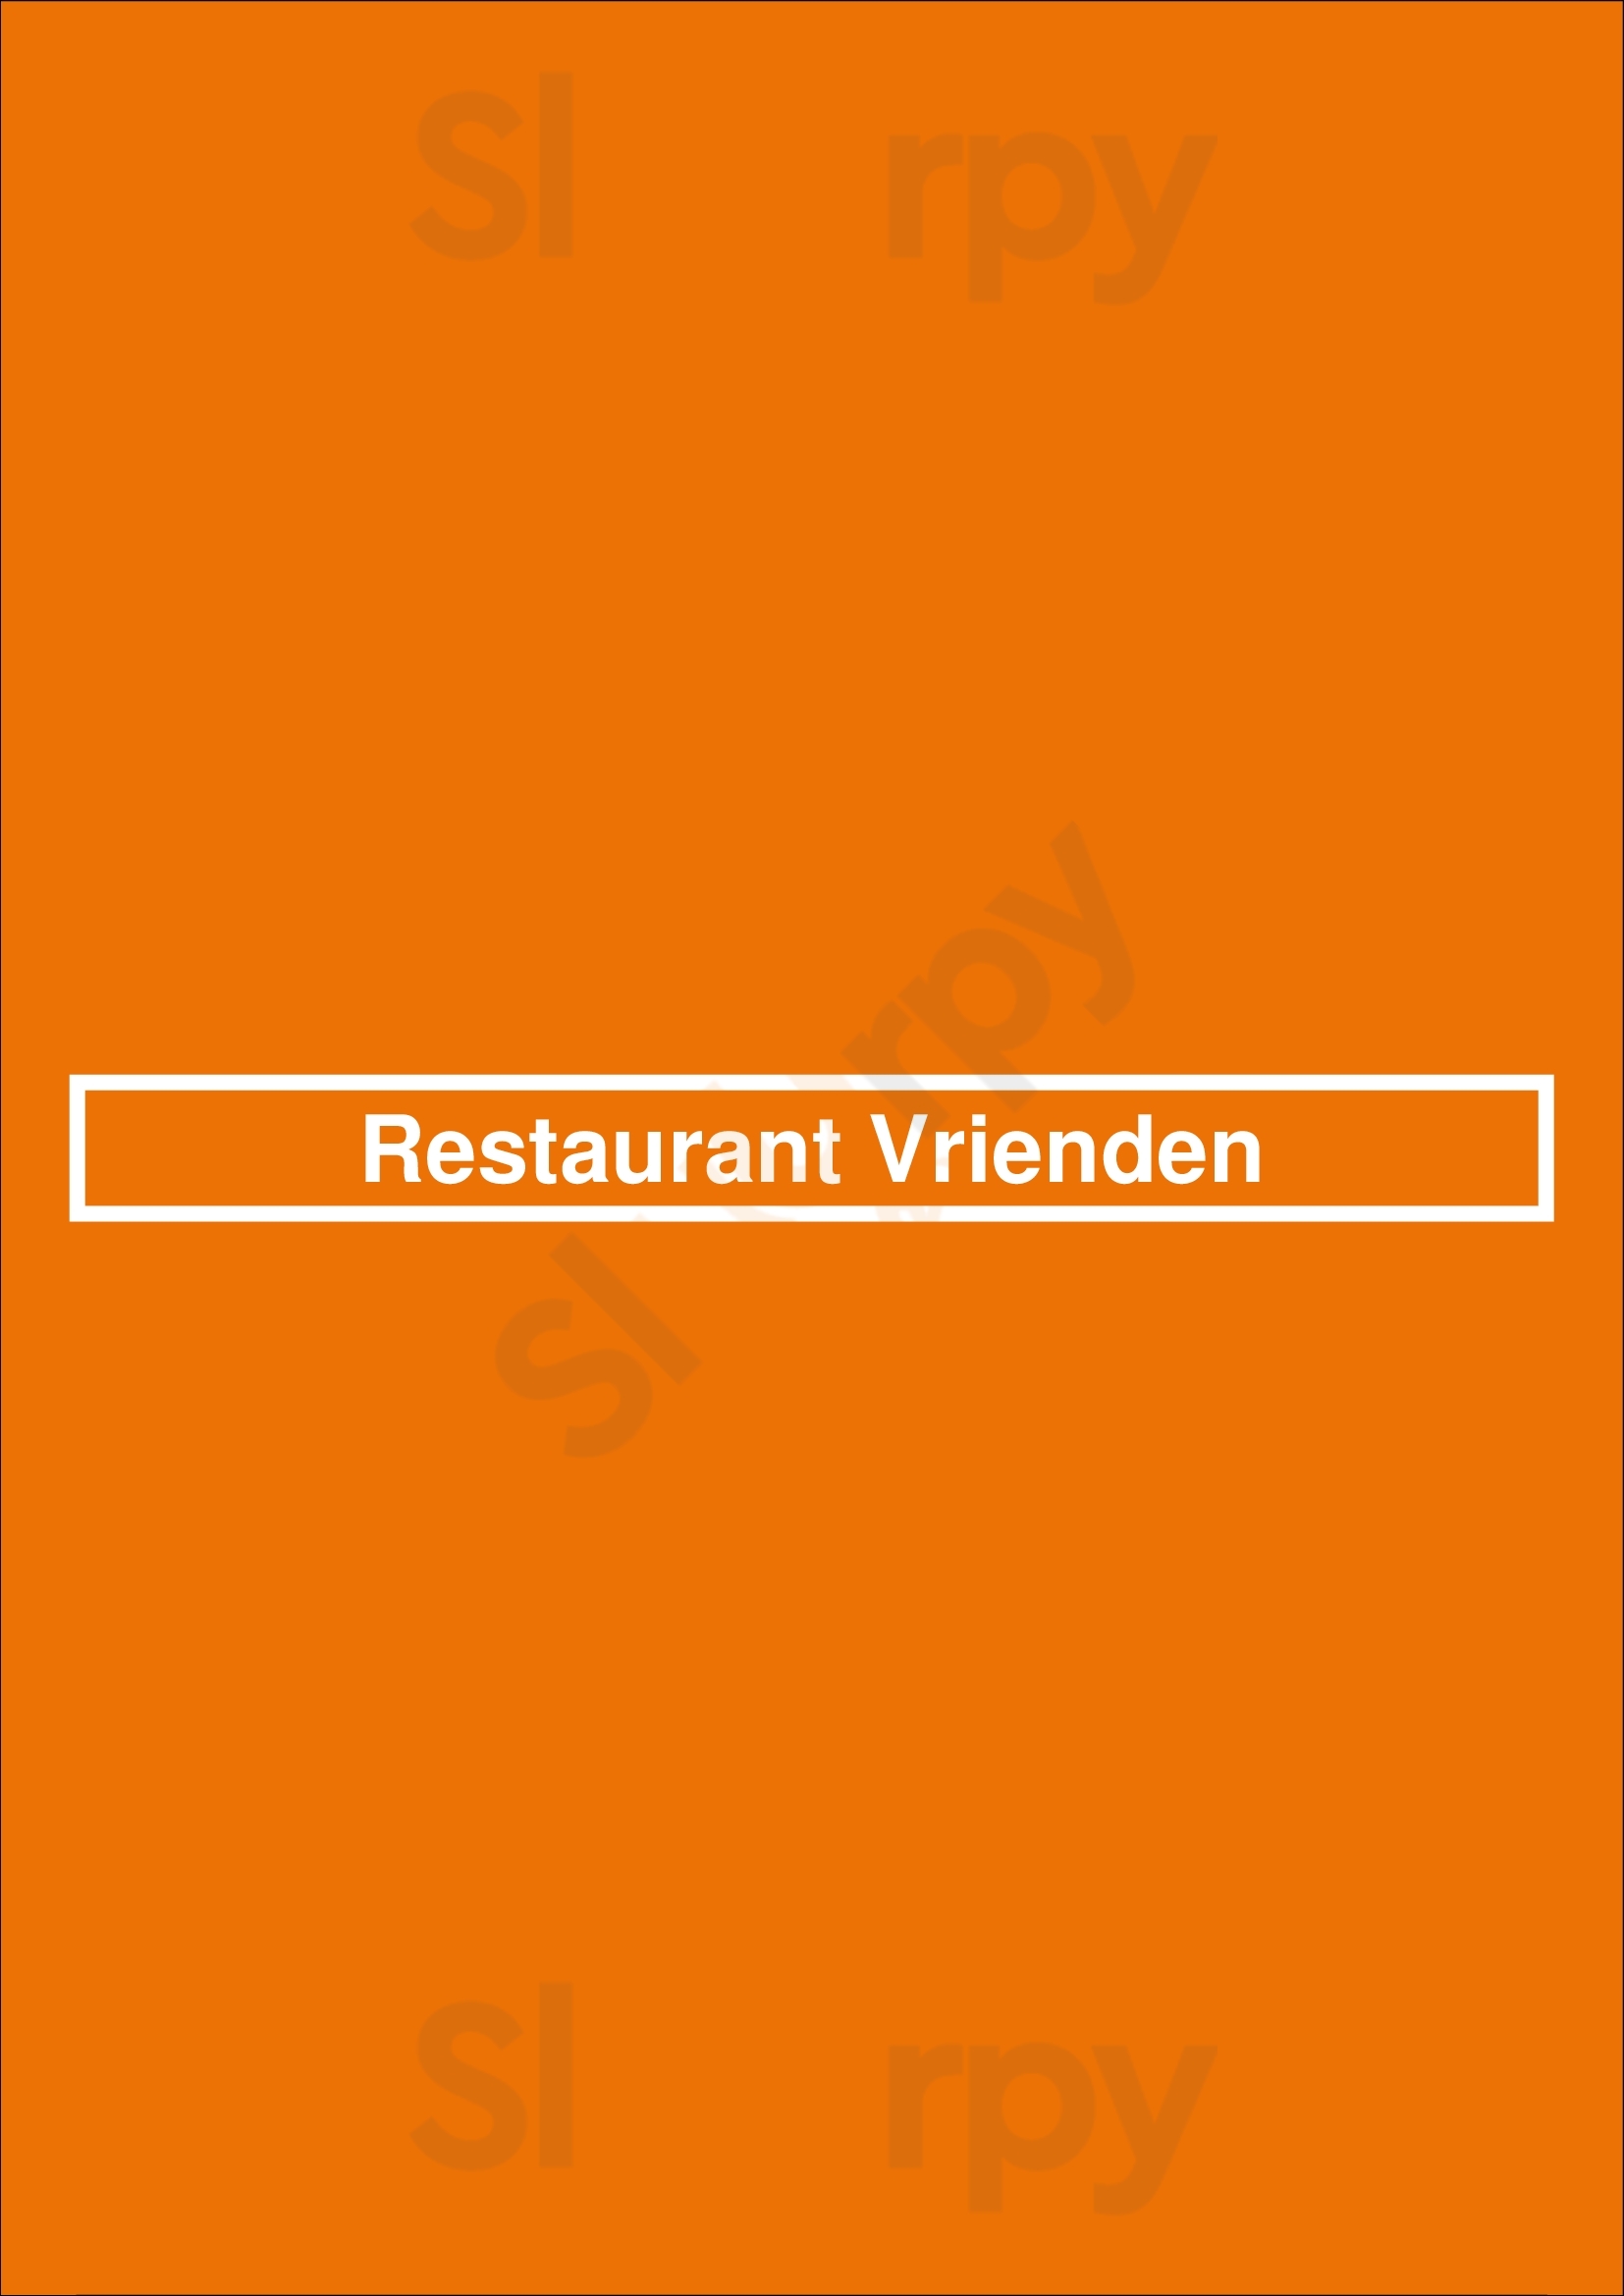 Restaurant Vrienden Den Bosch Menu - 1